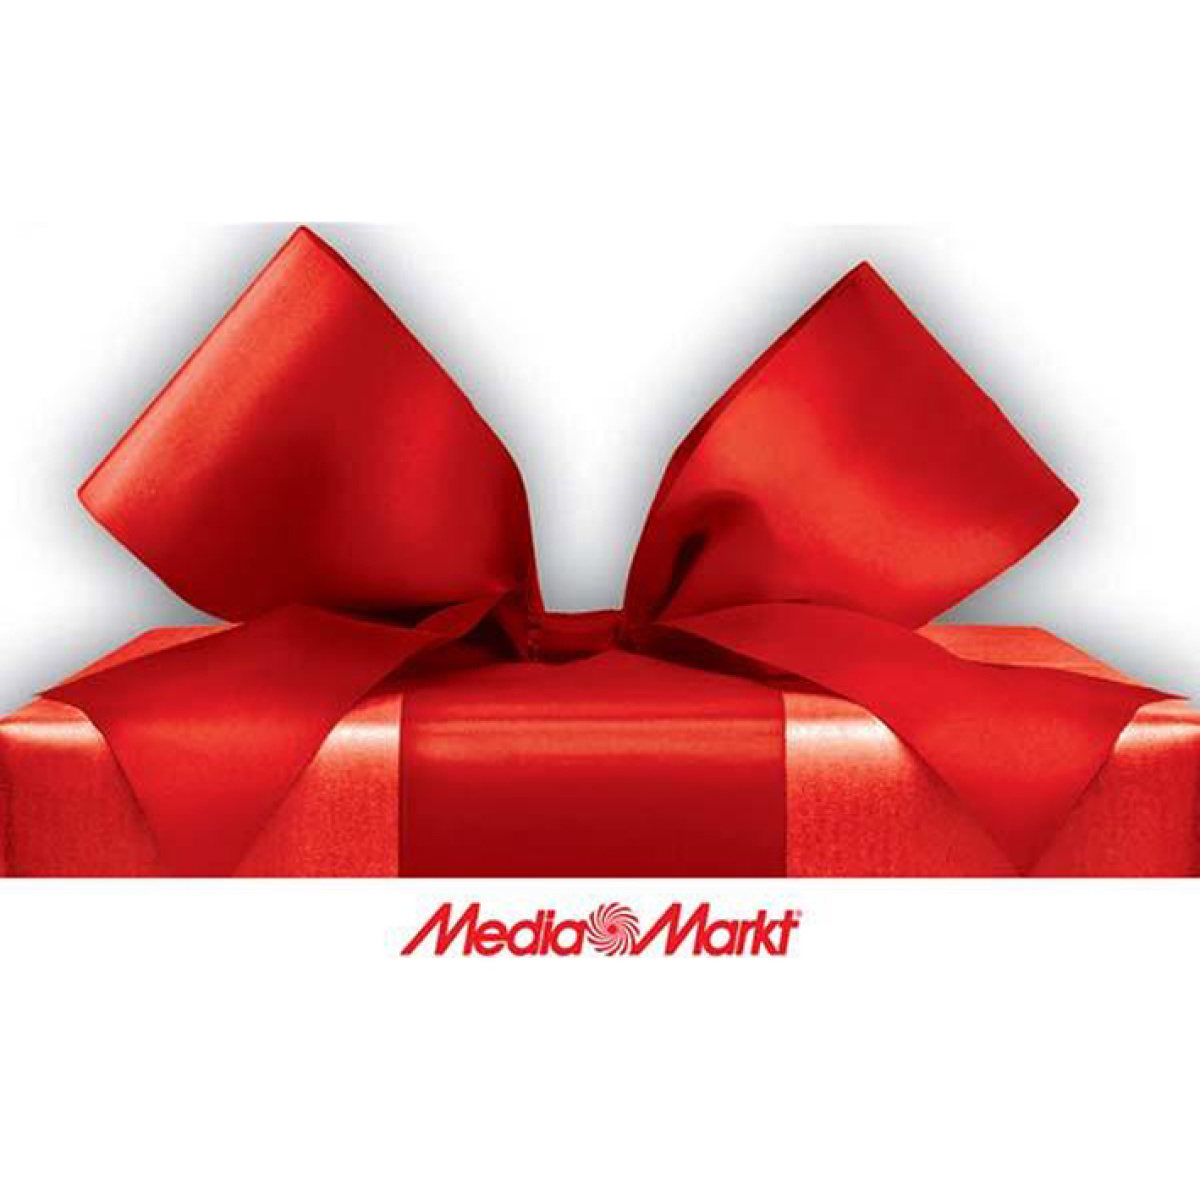  cheque regalo digital media markt tarjeta regalo digital mediamarkt